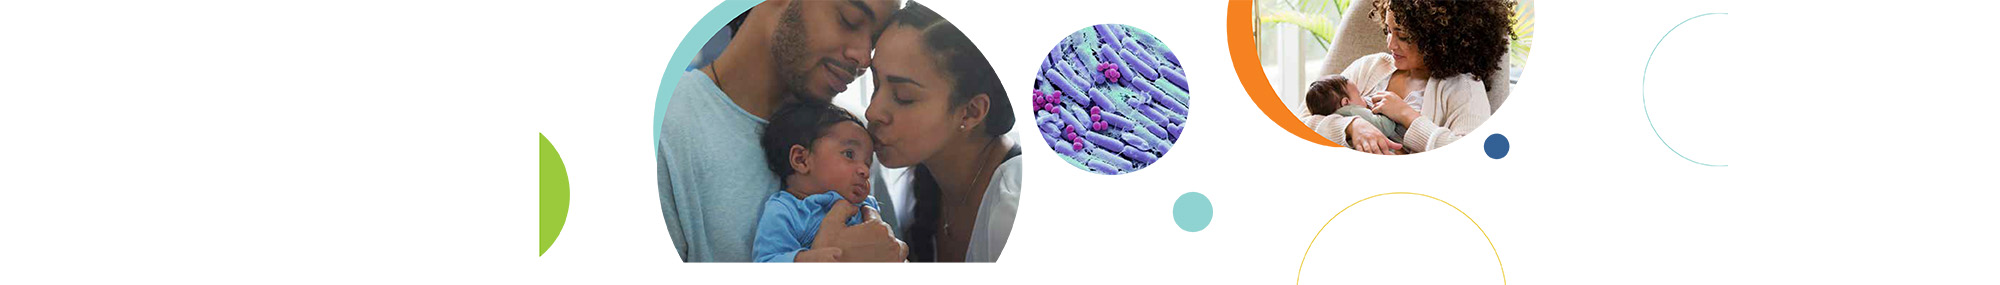 Una serie de tres imágenes circulares relacionadas con la lactancia materna y la leche humana, que incluyen padres sosteniendo y besando a su bebé (izquierda), una imagen ampliada de bacterias de la leche materna (centro) y una madre amamantando a su bebé (derecha).